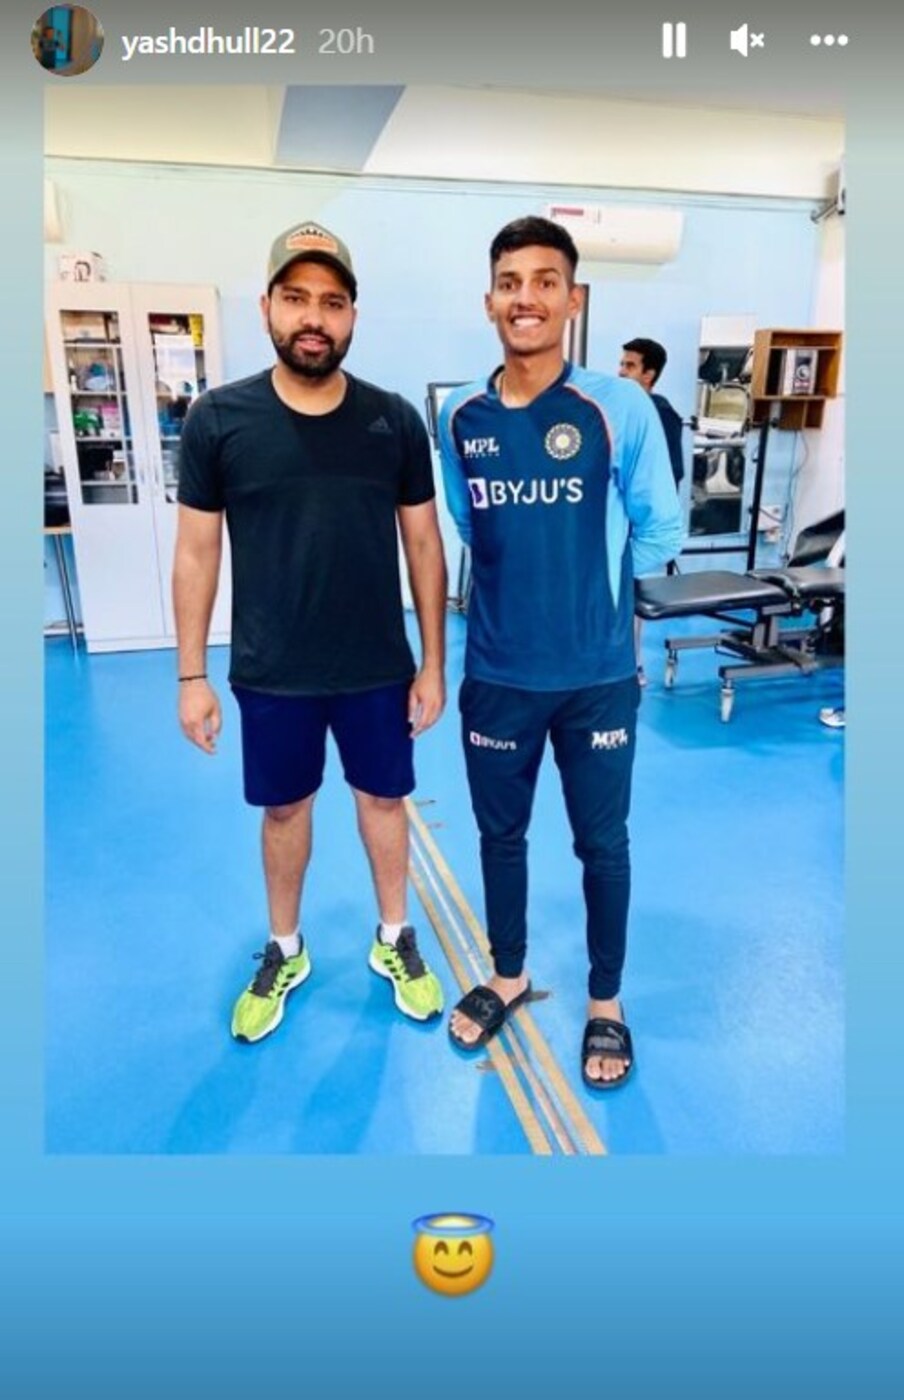  रोहित शर्मा को भारत के अंडर 19 कप्तान यश धुल के सोशल मीडिया पोस्ट पर डाली गई तस्वीरों में एनसीए में देखा गया. अंडर-19 टीम इस समय एनसीए में है जिसे 23 दिसंबर से यूएई में एशिया कप खेलना है.